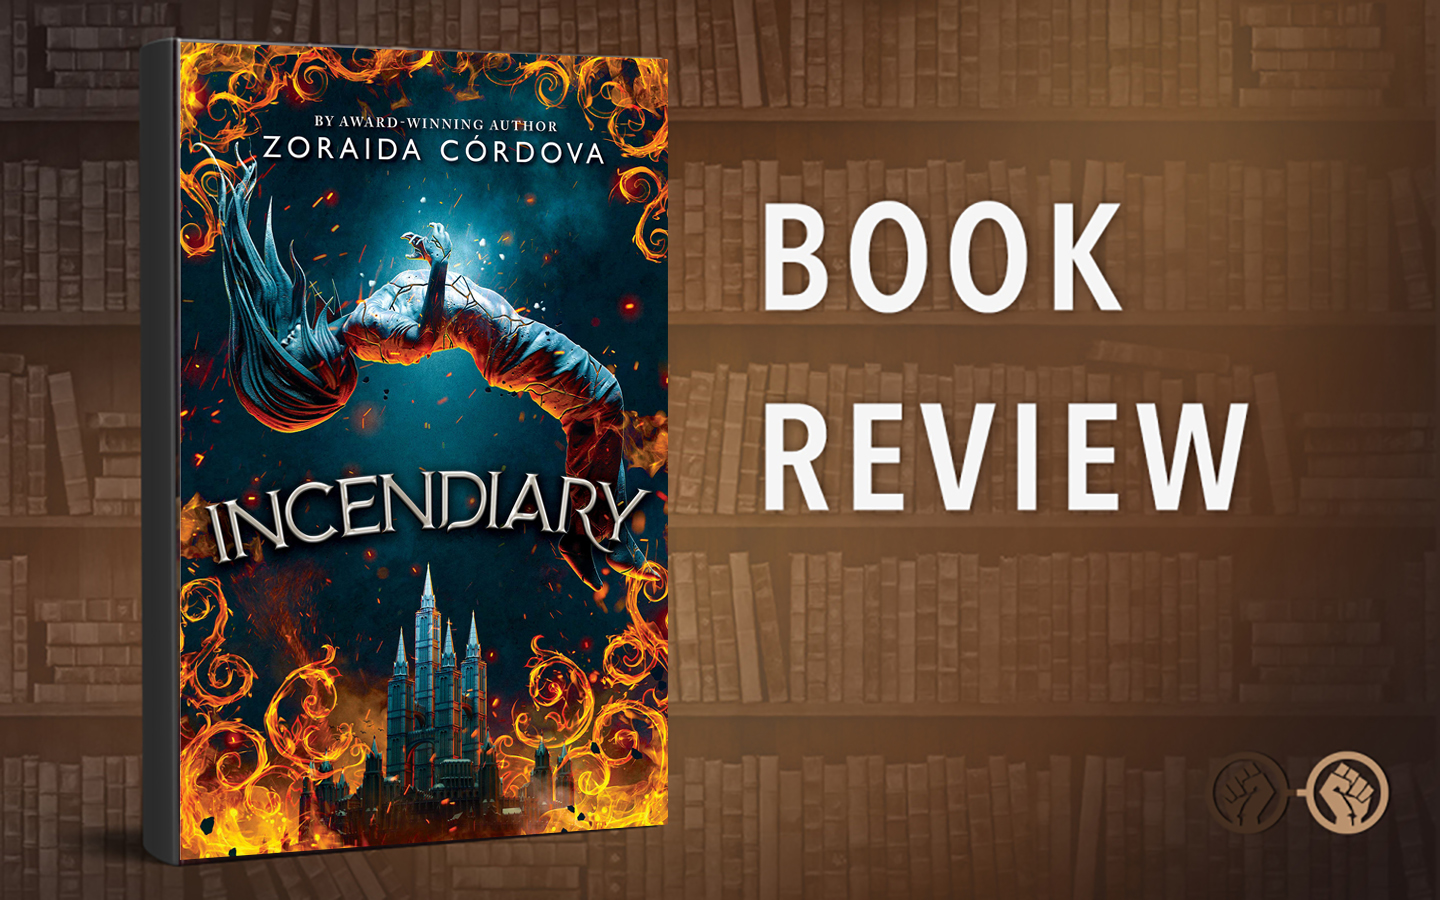 Historical Inspiration and Fantasy Collide in Zoraida Cordova’s ‘Incendiary’ – Book Review